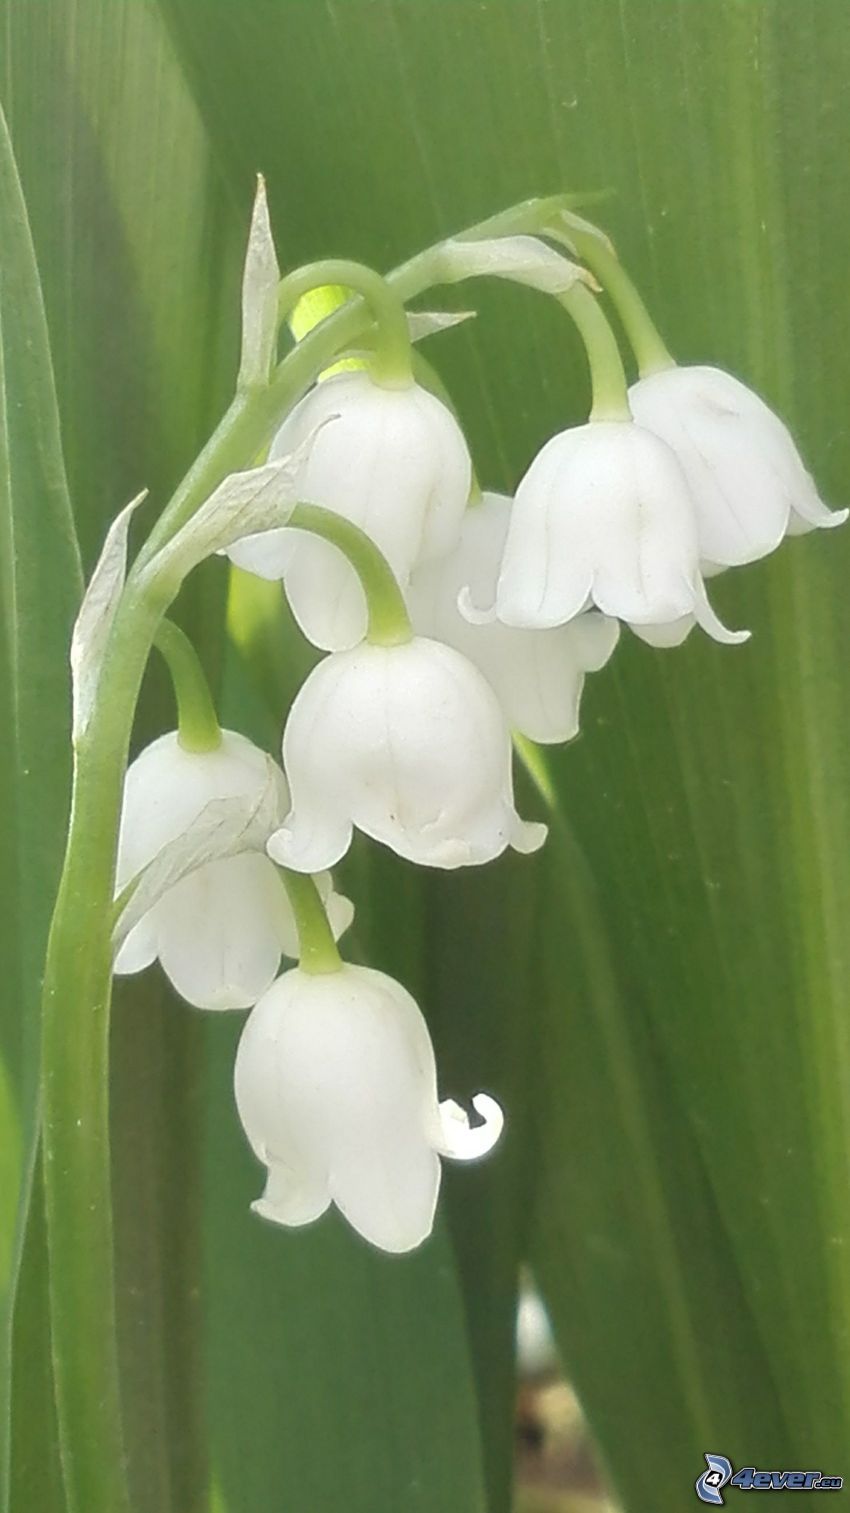 muguet, fleurs blanches